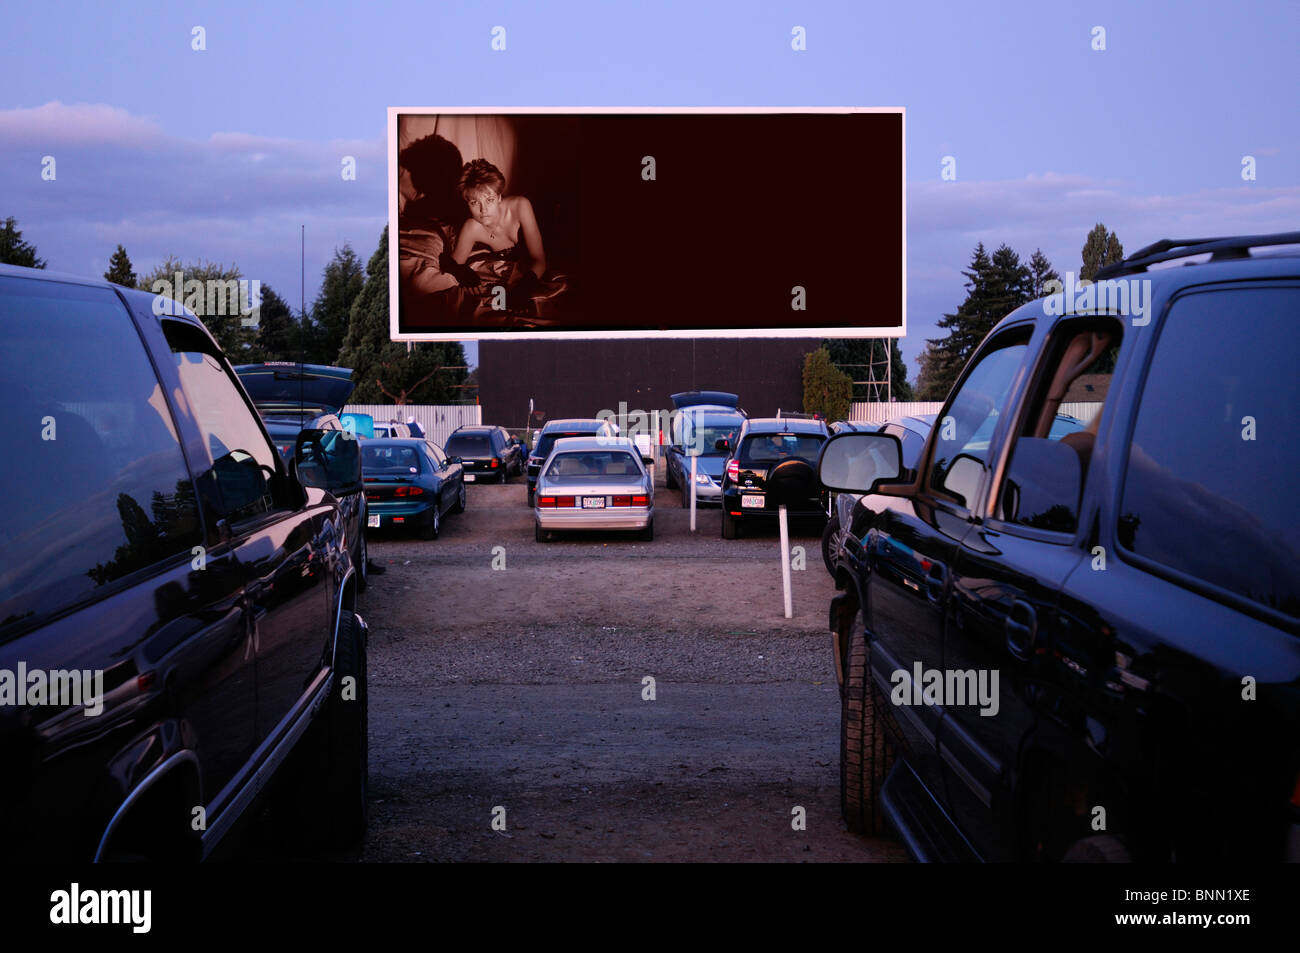 Motor Vu fahren In Dallas Oregon USA Kino parkende Autos Stockfoto